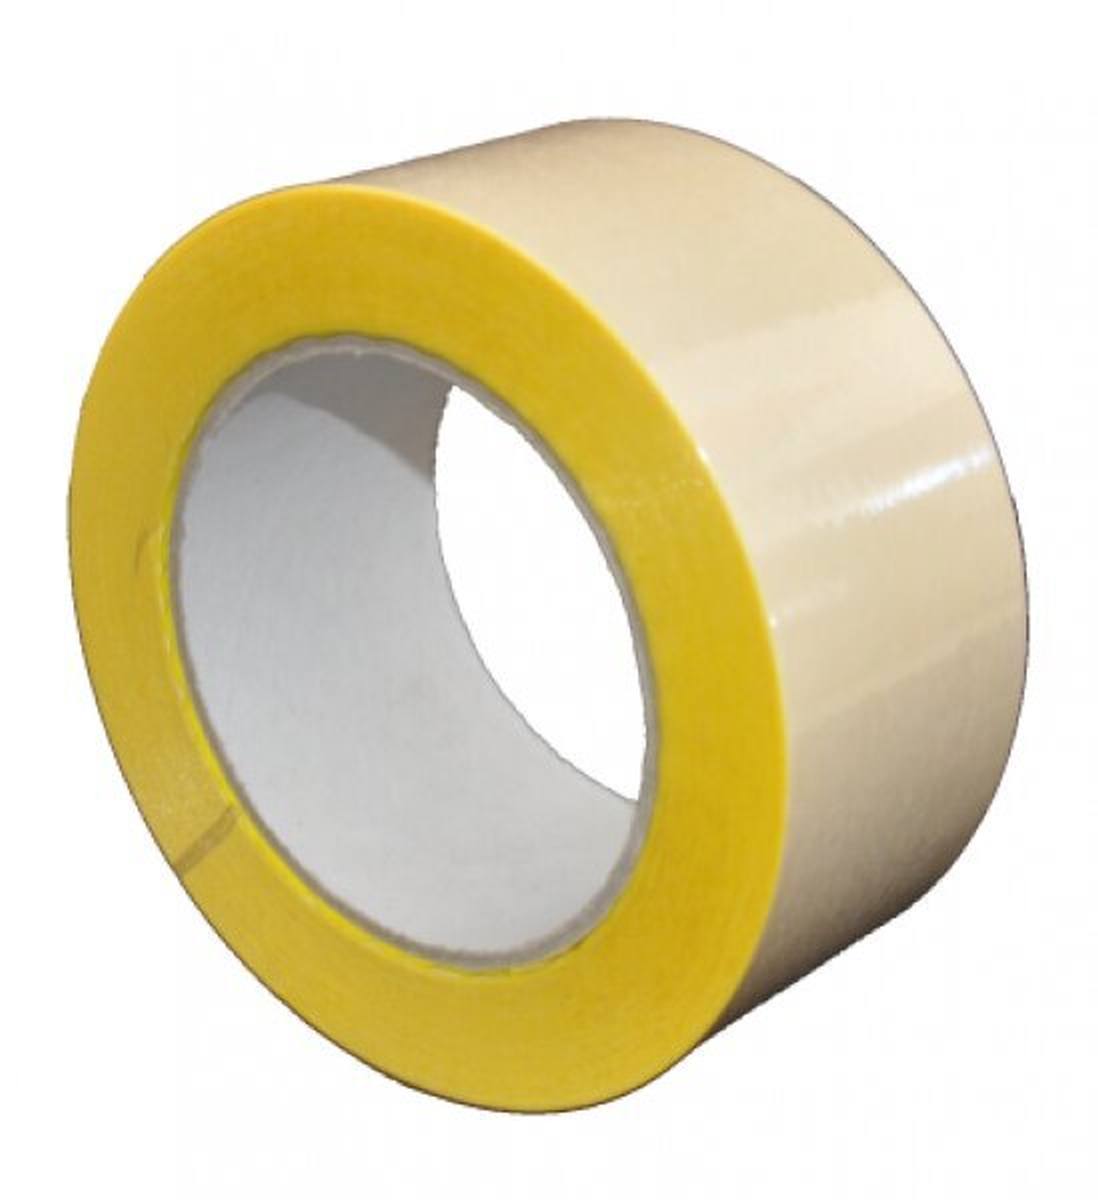 S-K-S 407 Cinta adhesiva de doble cara con soporte de polipropileno, alta / baja adhesividad, amarilla, 25 mm x 50 m, 0,15 mm